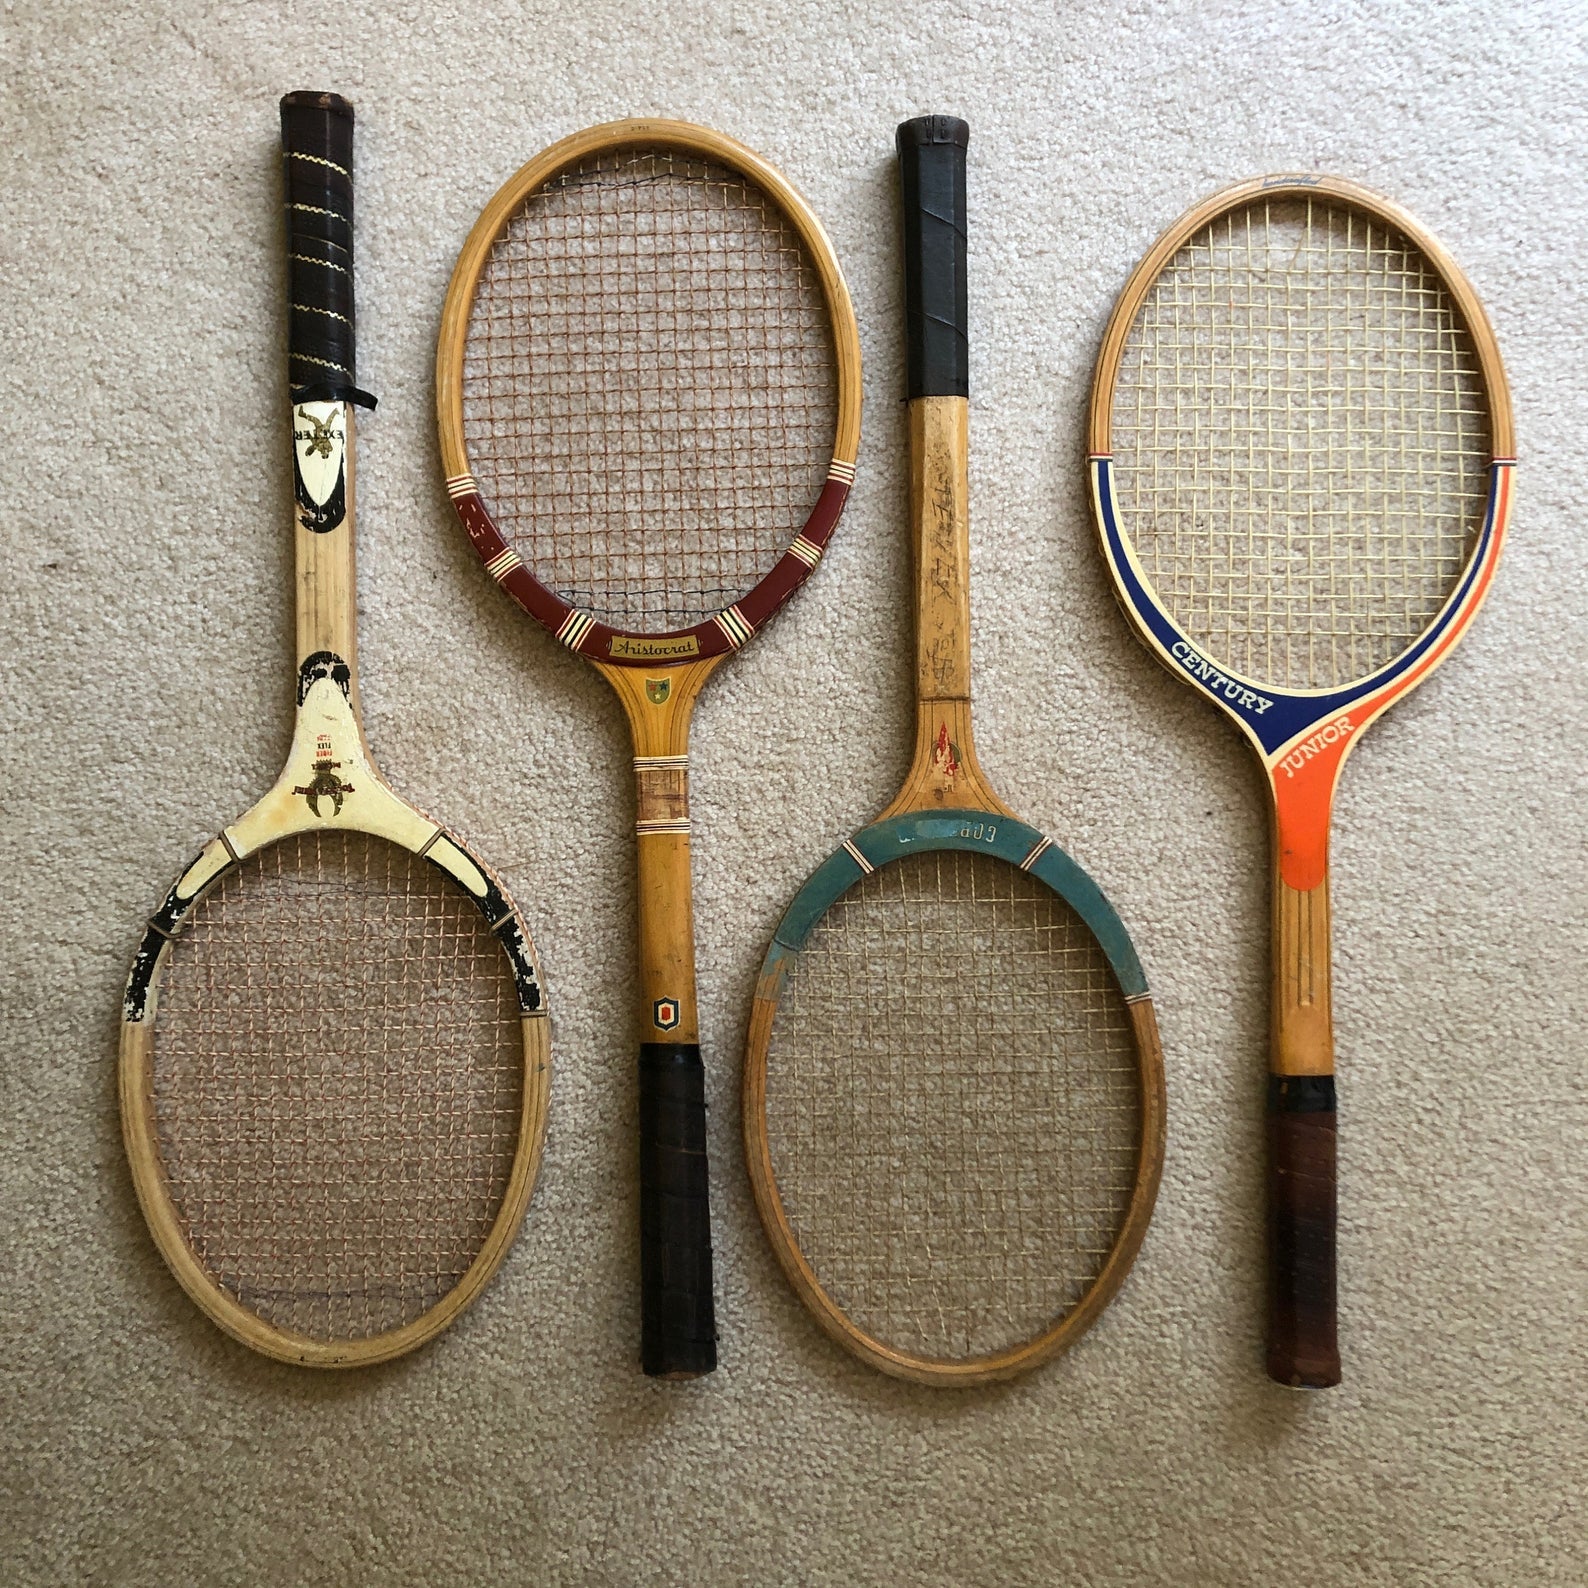 four vintage tennis racquets